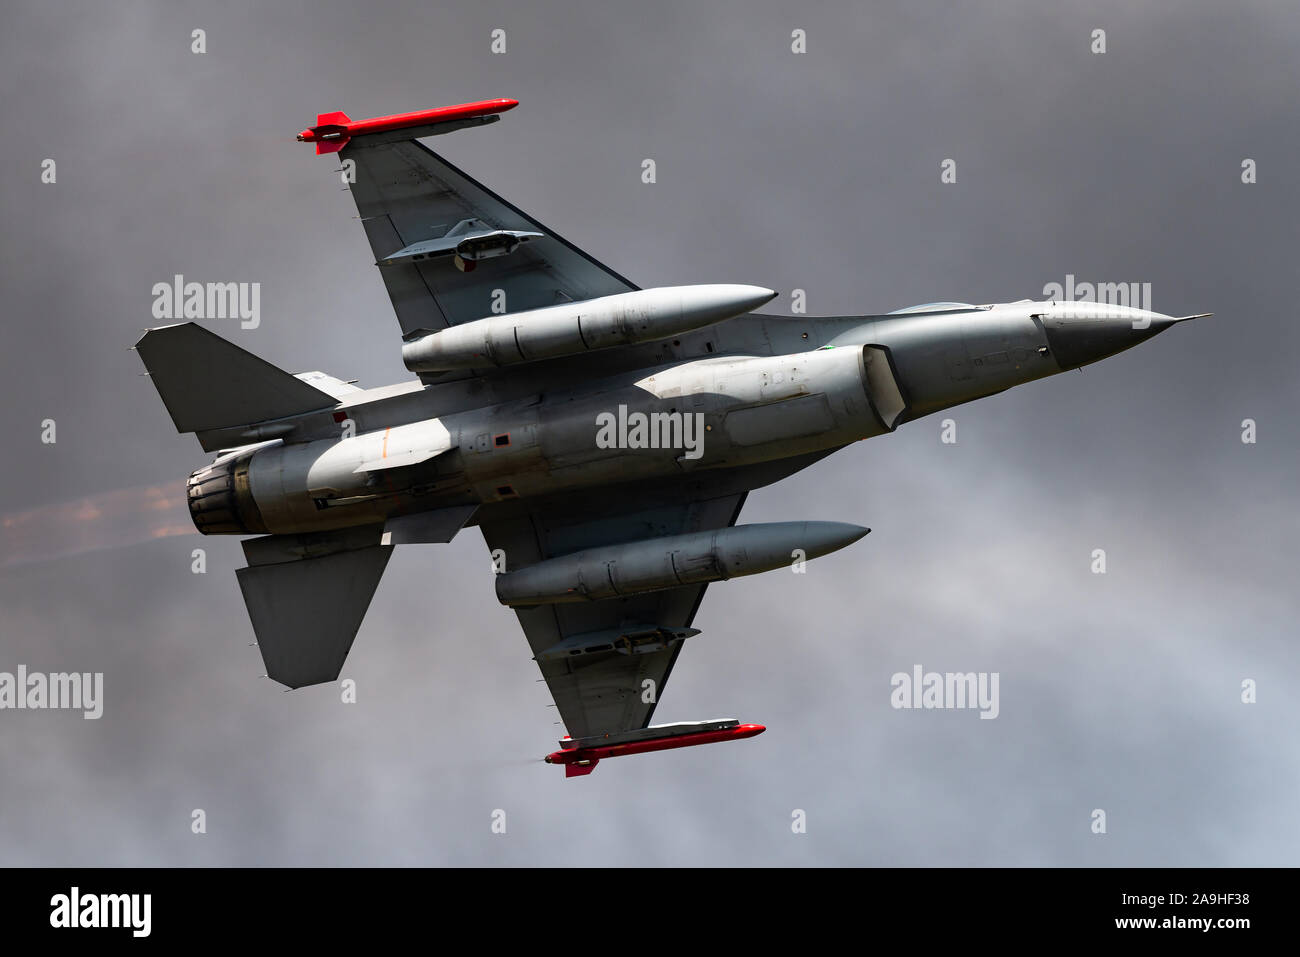 Un General Dynamics F-16 Fighting Falcon mono-motore supersonic multirole Fighter Aircraft dell'aviazione reale dei Paesi Bassi a Volkel airbase. Foto Stock